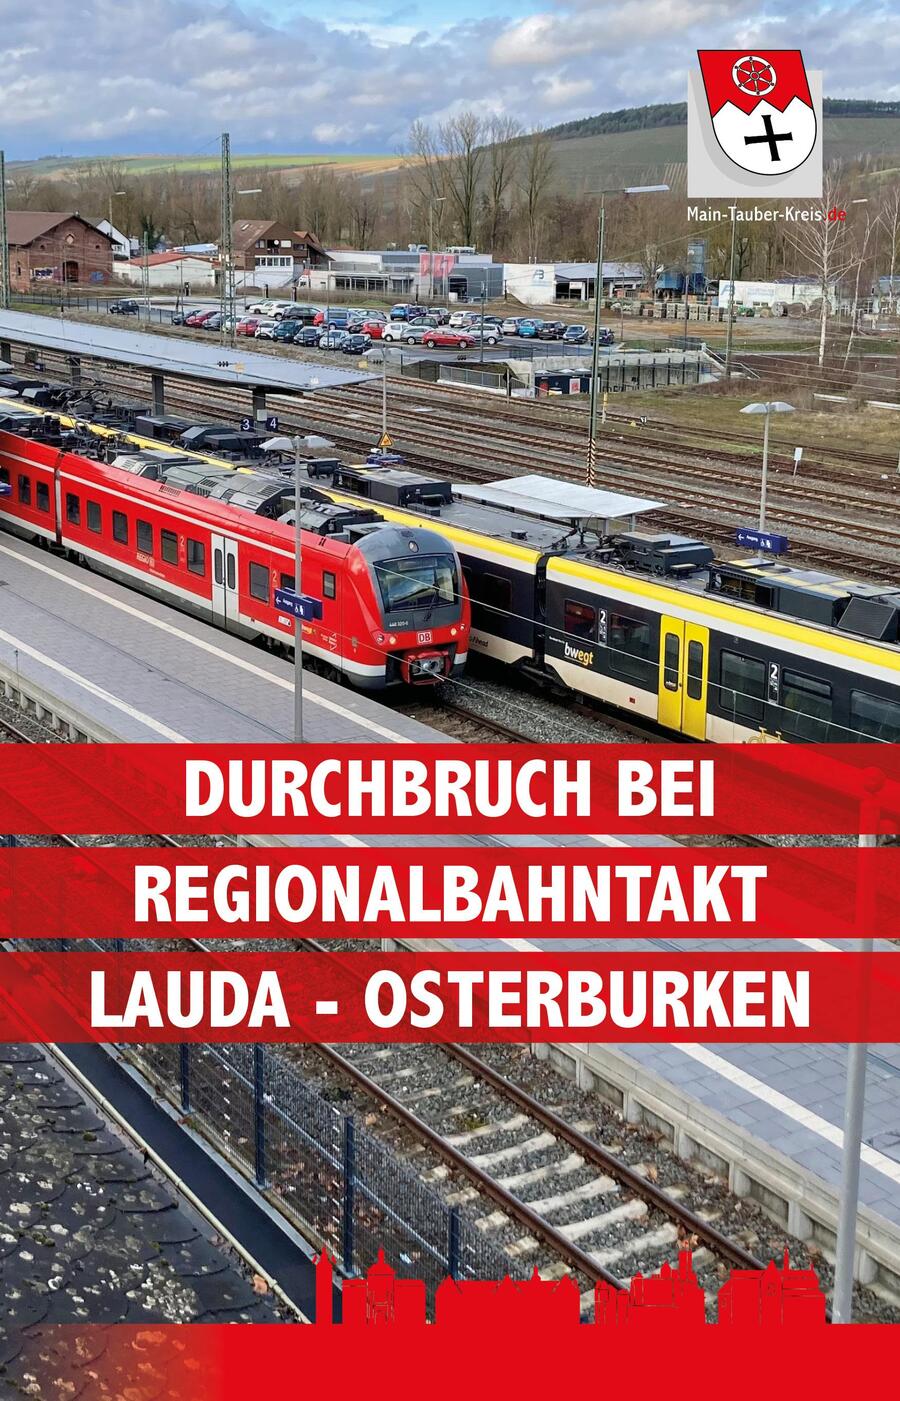 Durchbruch beim Regionalbahntakt Lauda - Osterburken